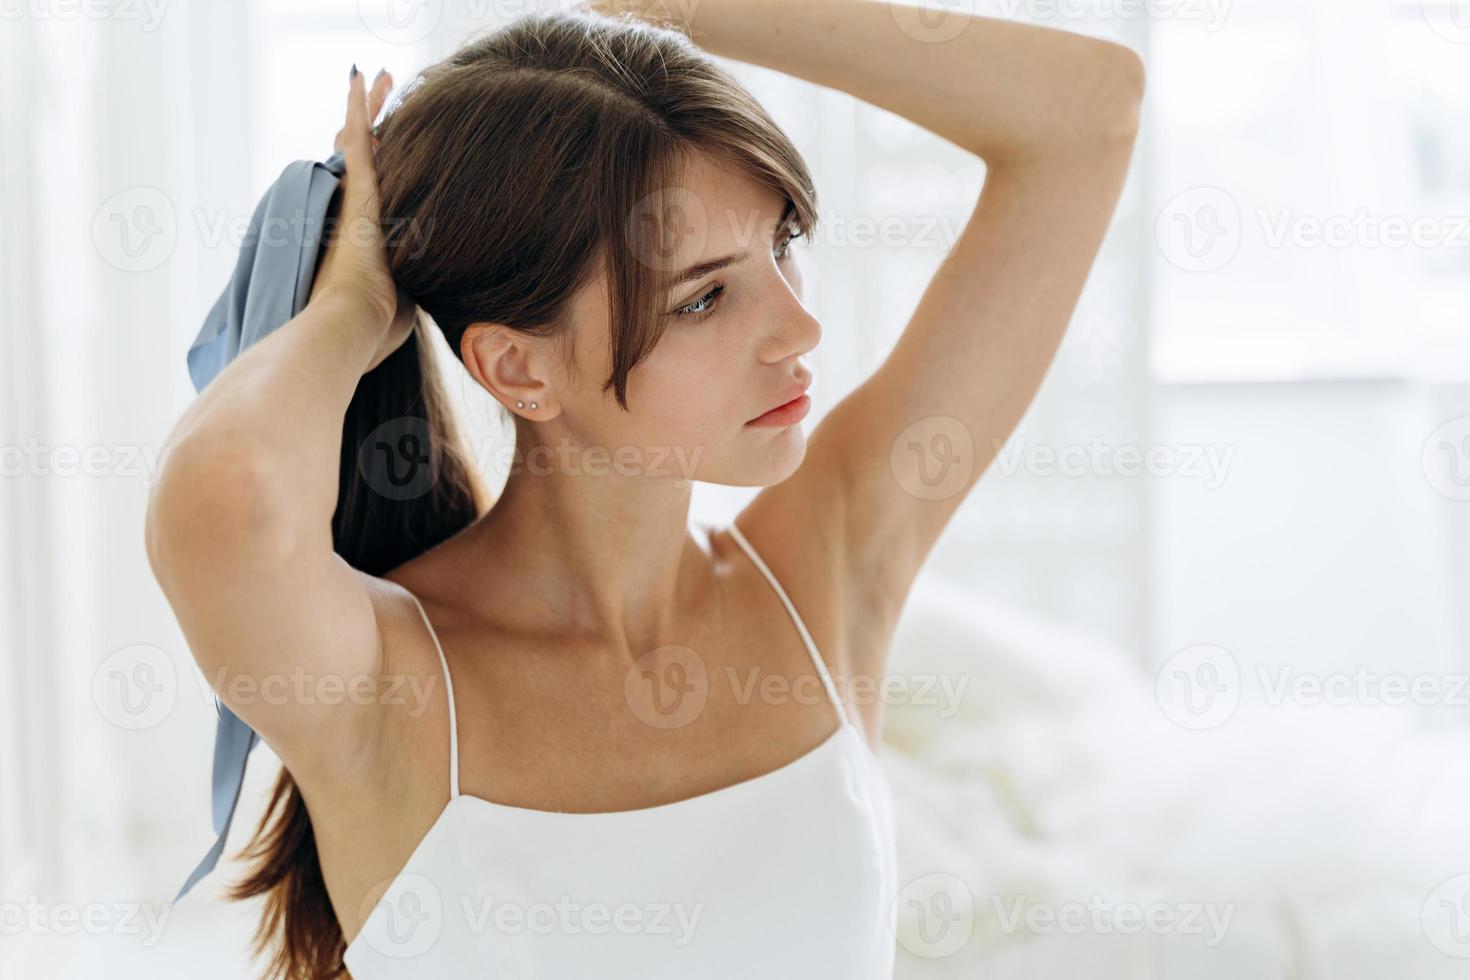 jolie femme se brosser les longs cheveux bruns dans la salle de bain le matin le tenant dans une main en queue de cheval alors qu'elle se prépare à attacher un arc photo